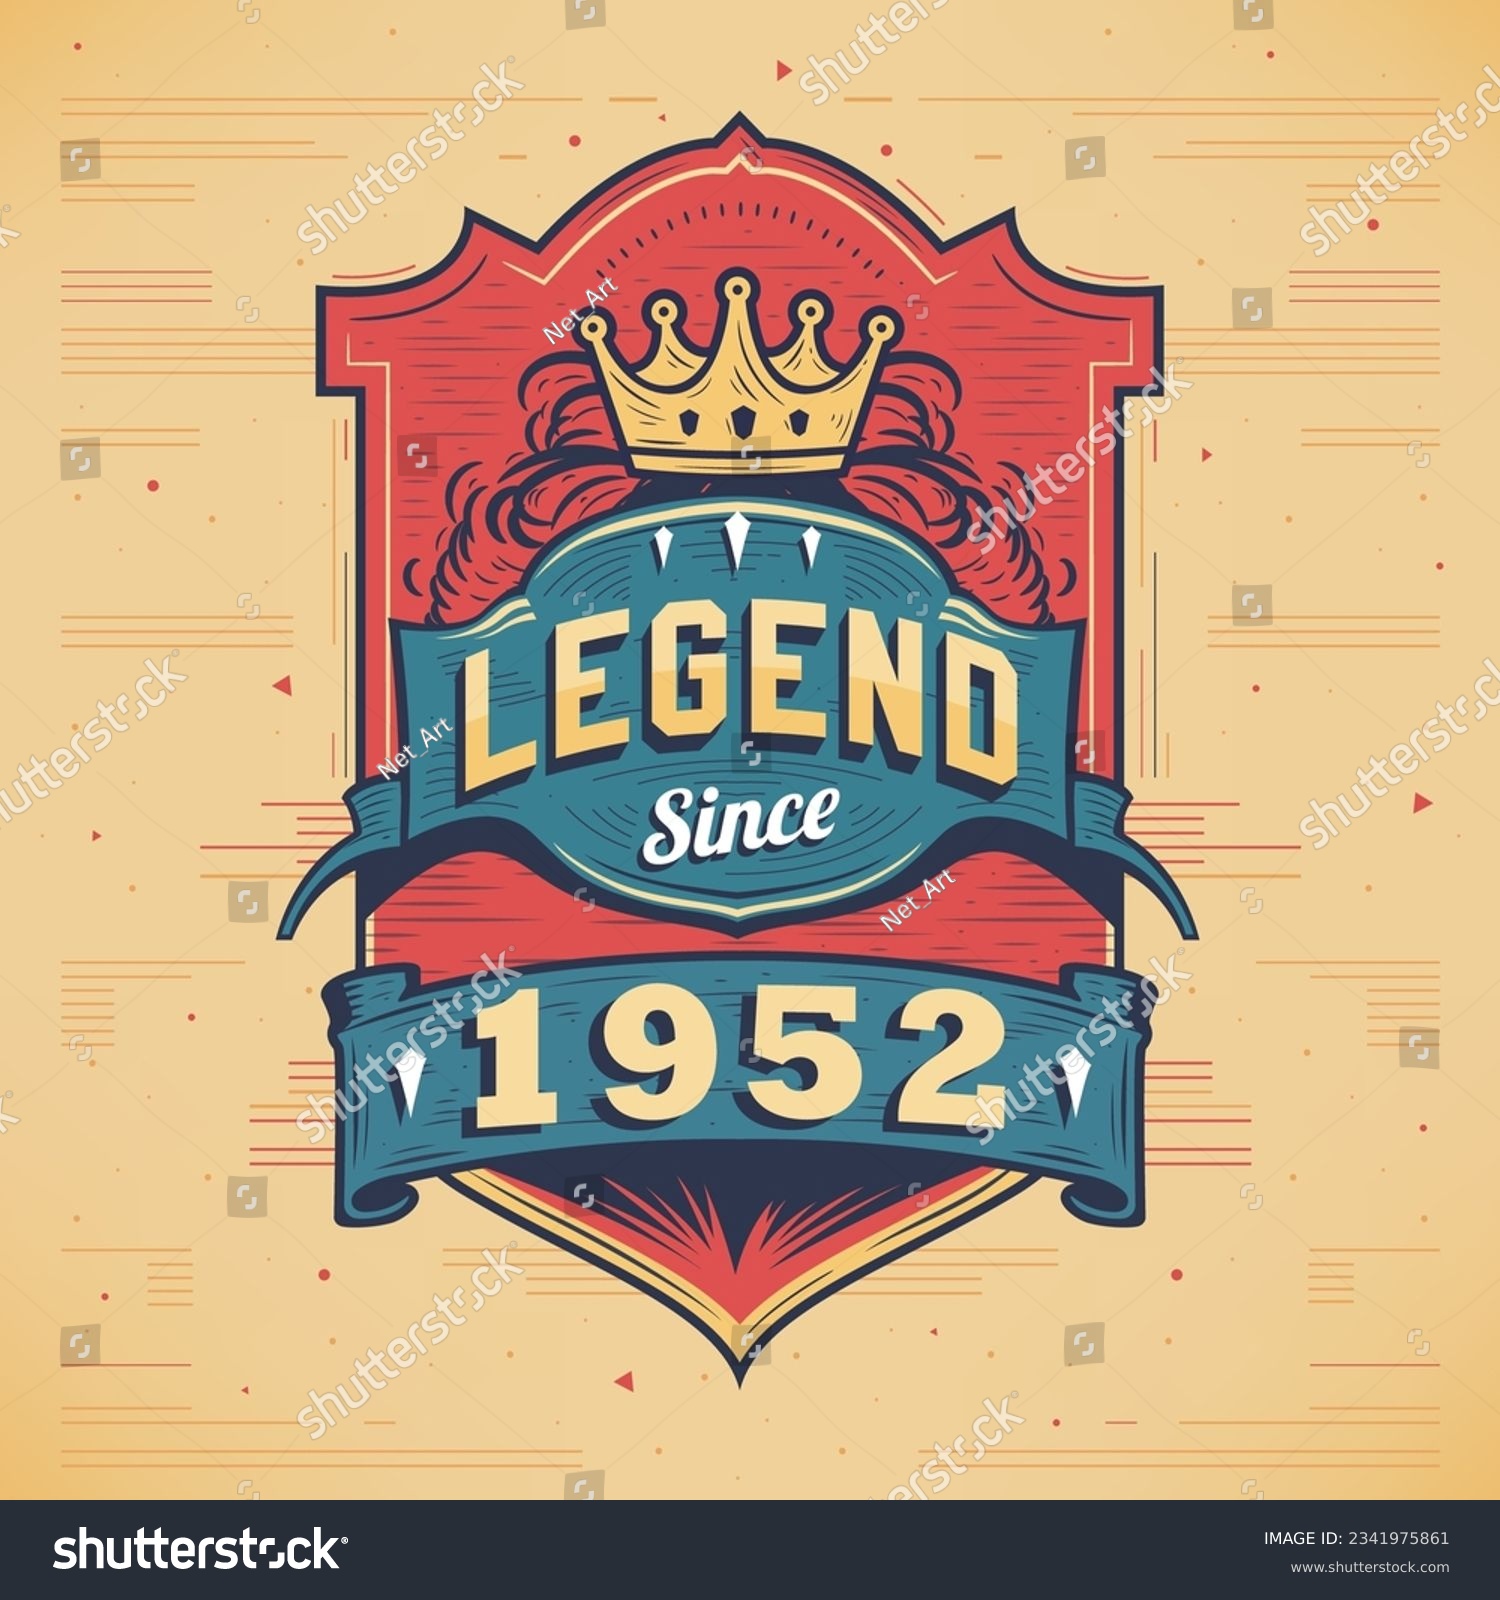 SVG of Legend Since 1952 Vintage T-shirt - Born in 1952 Vintage Birthday Poster Design. svg